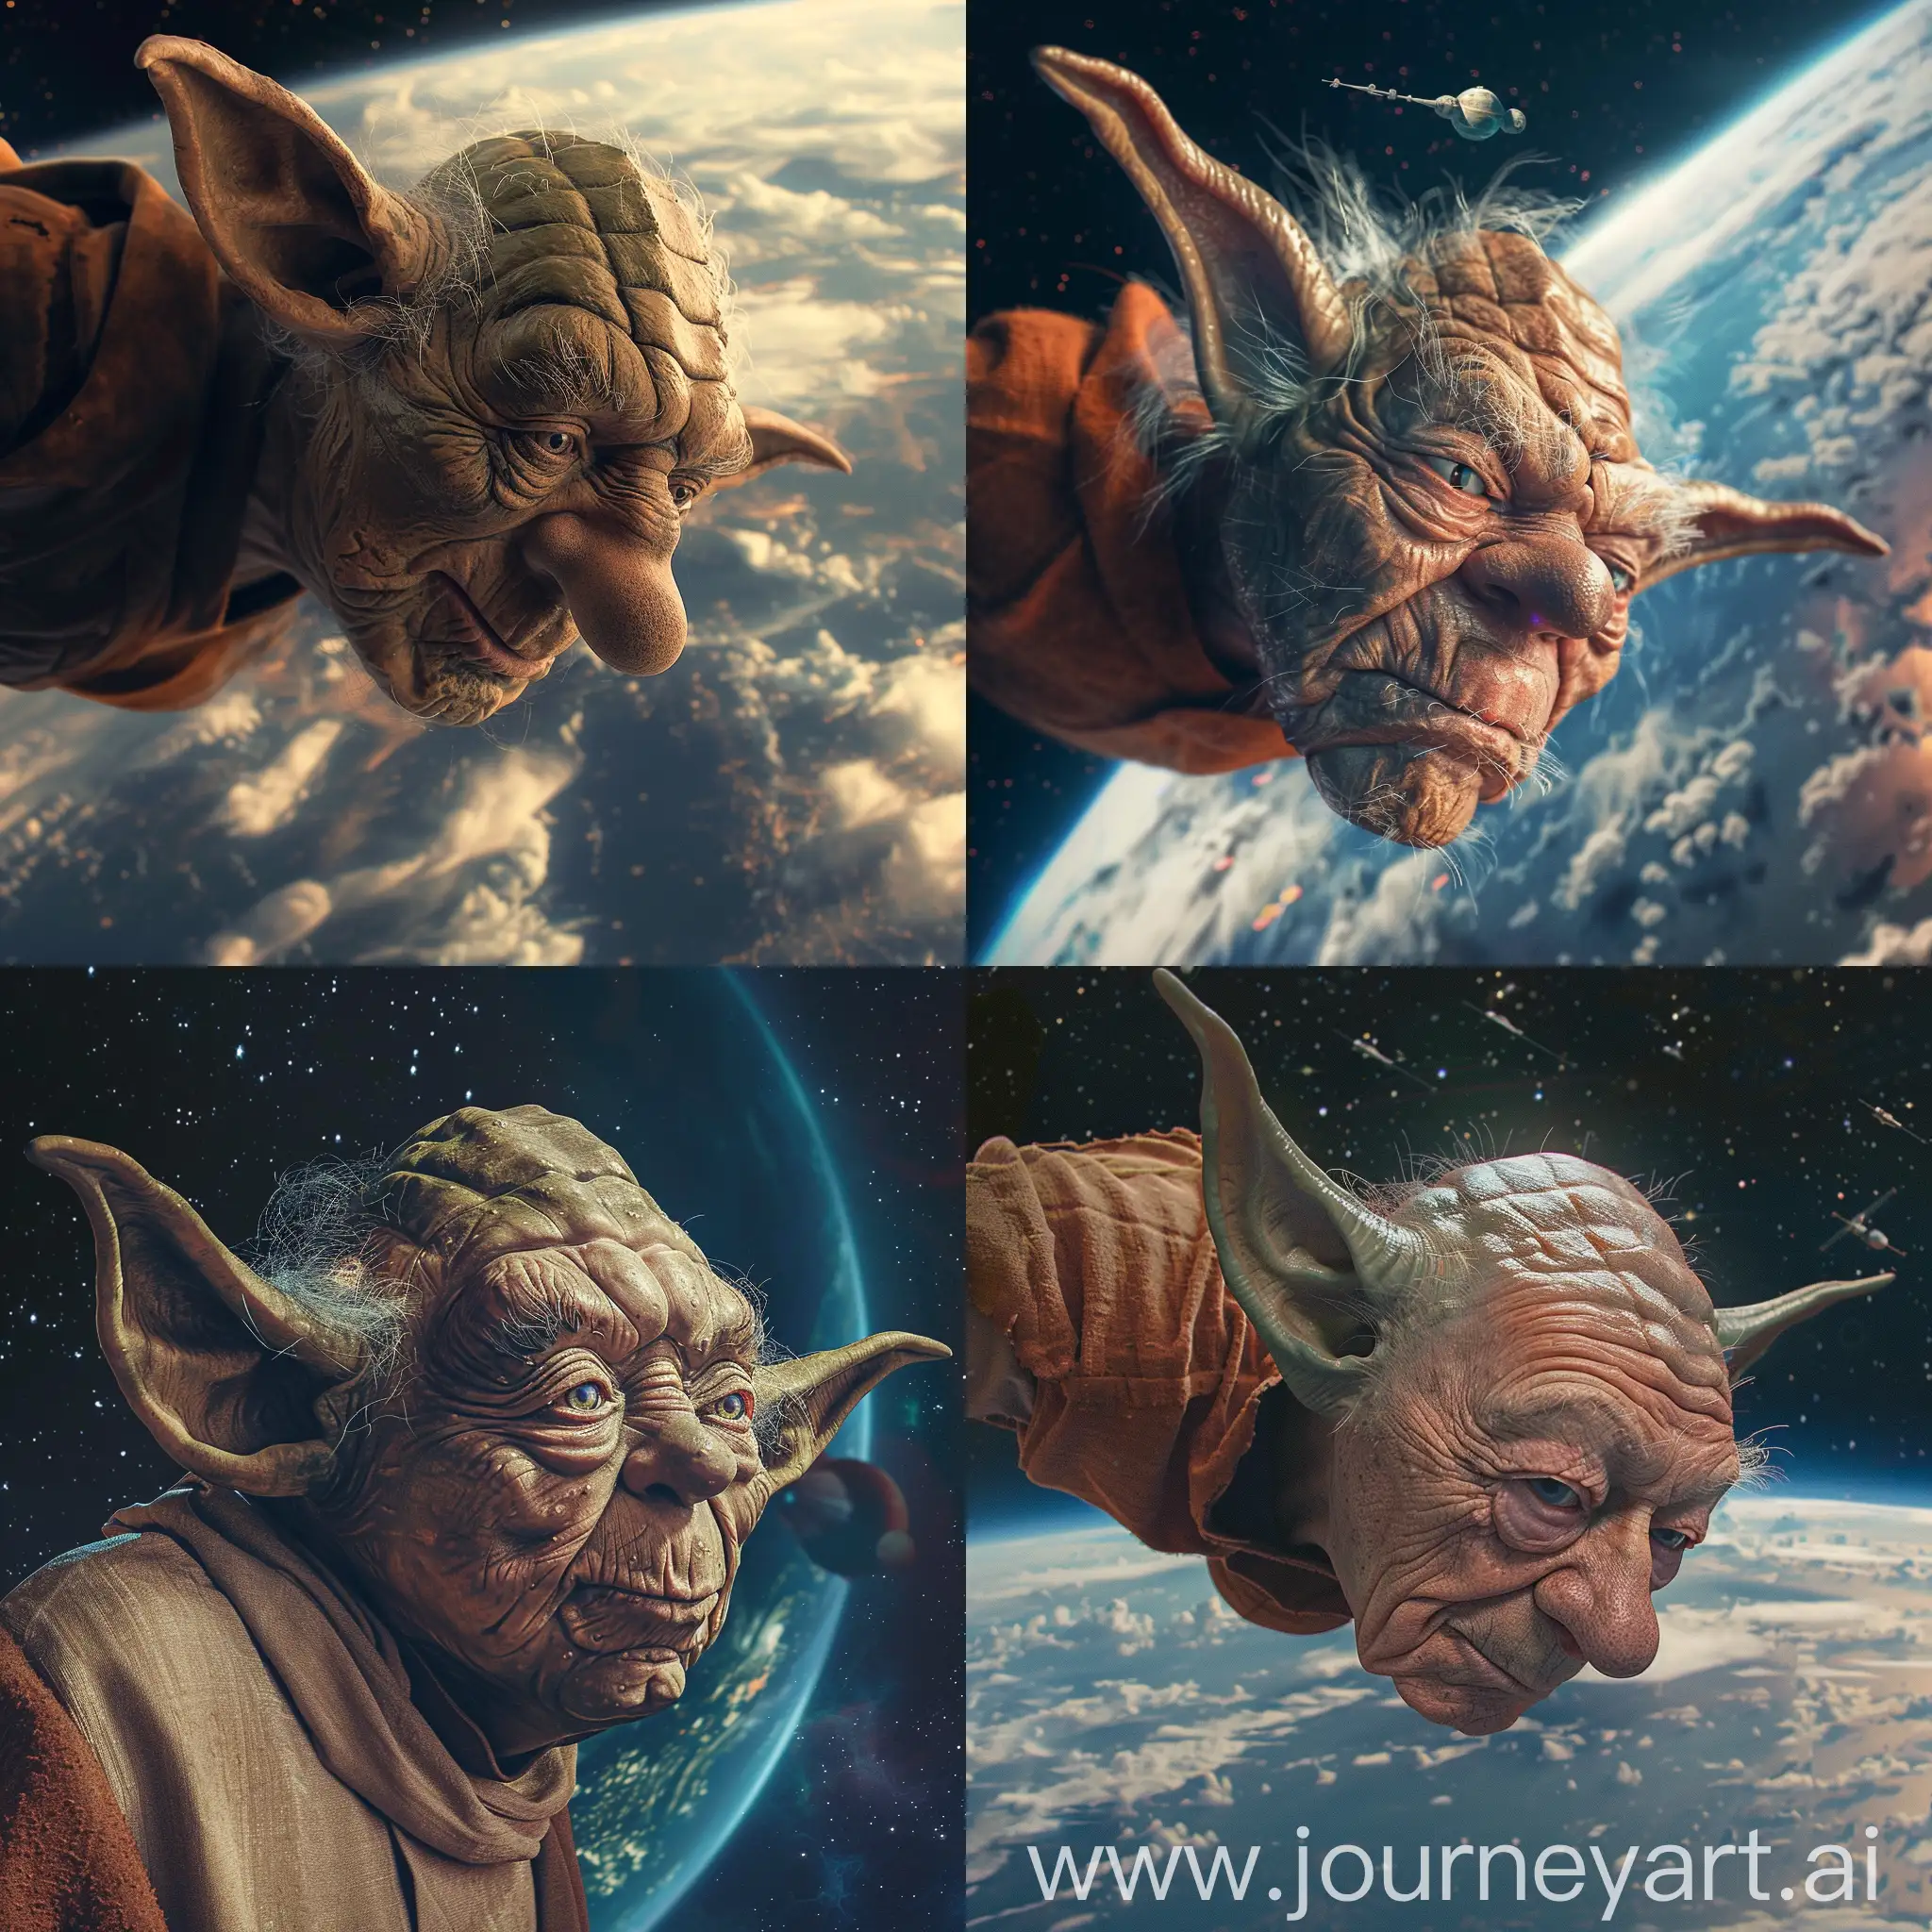 Wise-YodaLike-Man-Soaring-Through-Galactic-Adventures